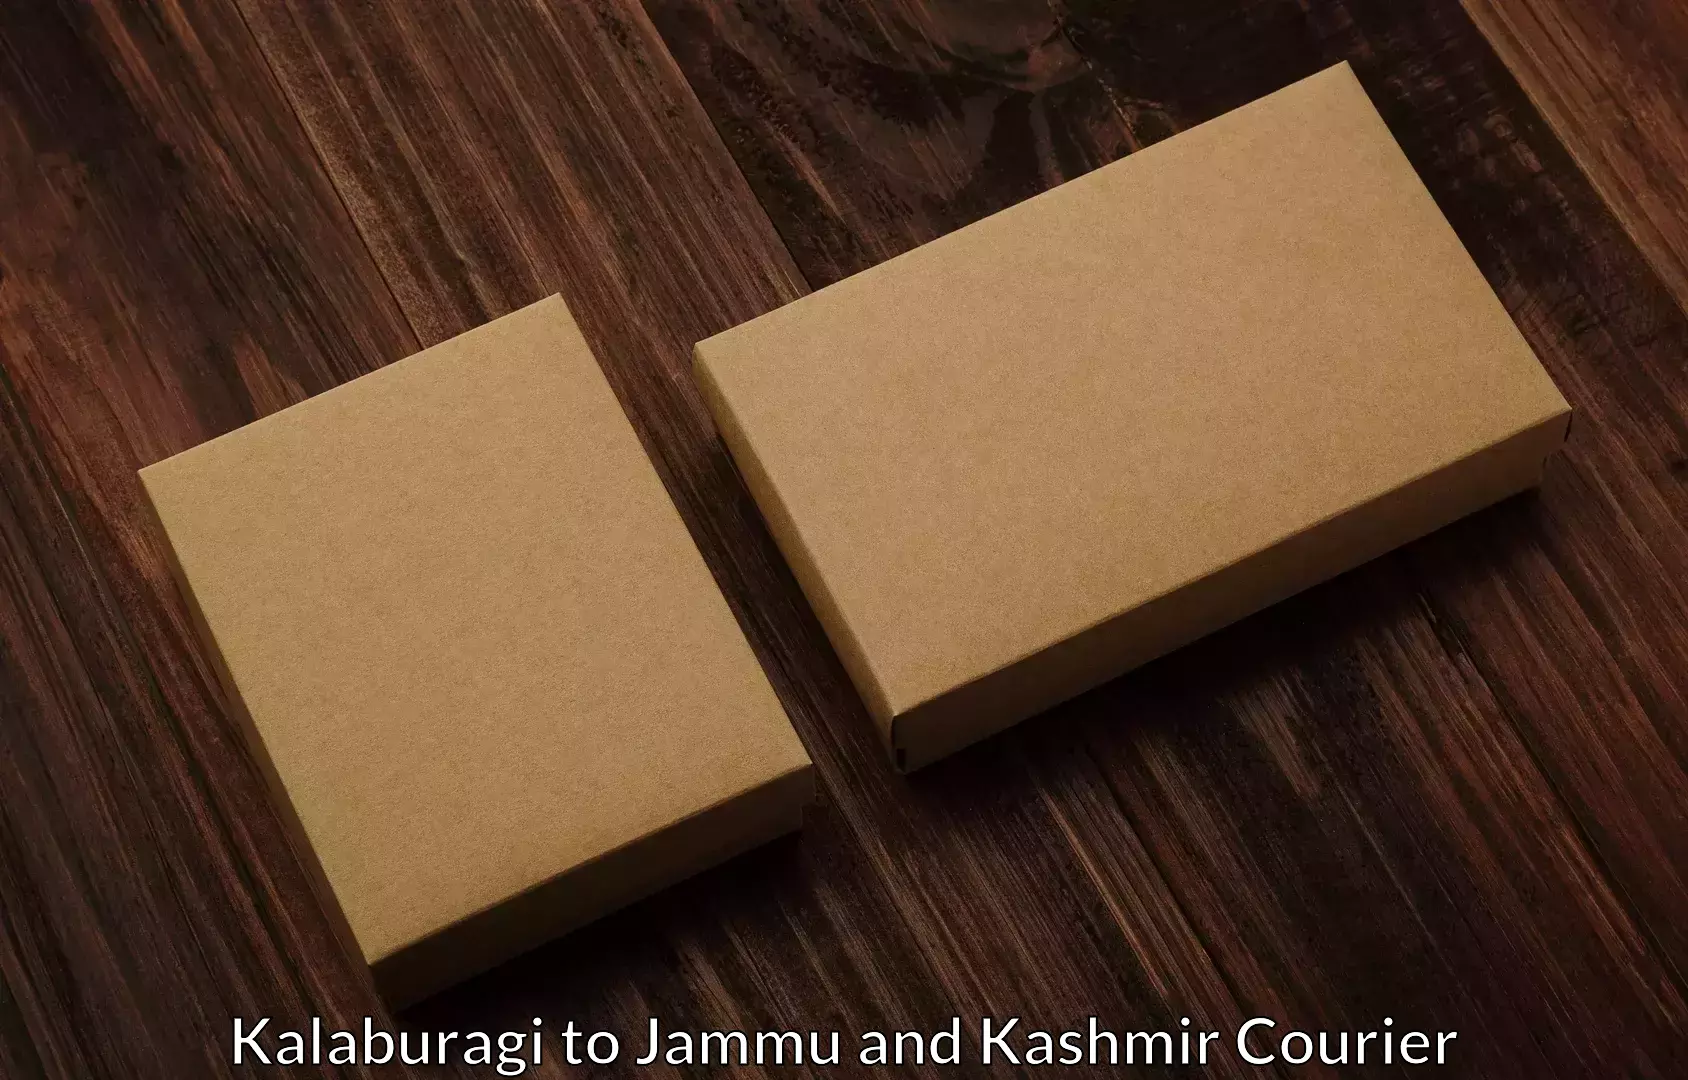 Premium moving services Kalaburagi to Jammu and Kashmir